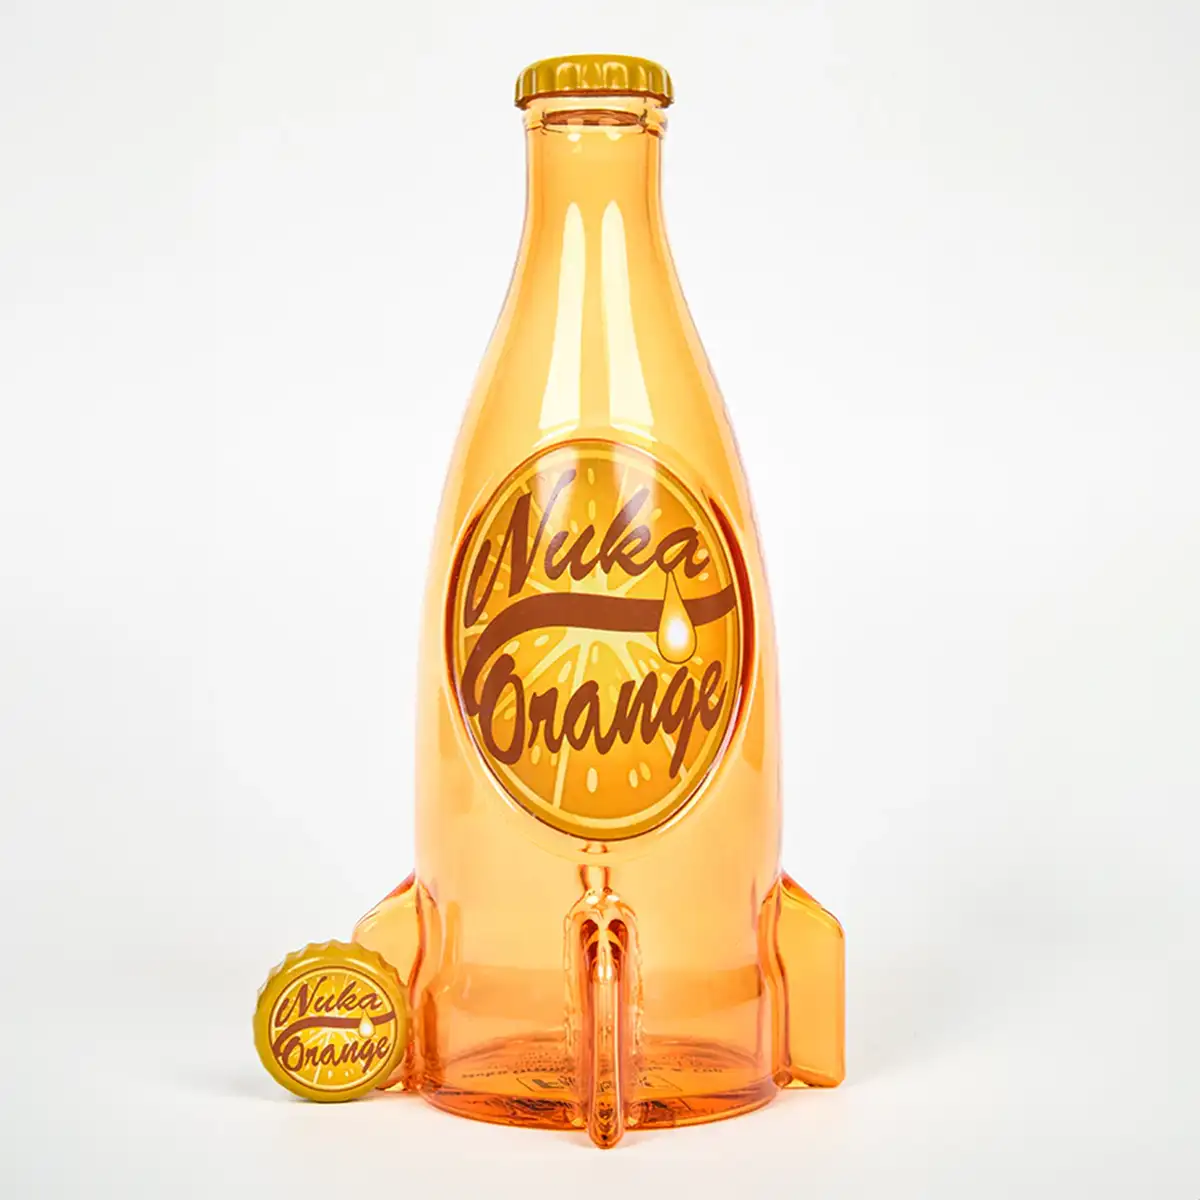 Fallout "Nuka Cola Orange" Glasflasche und Kronkorken Image 2